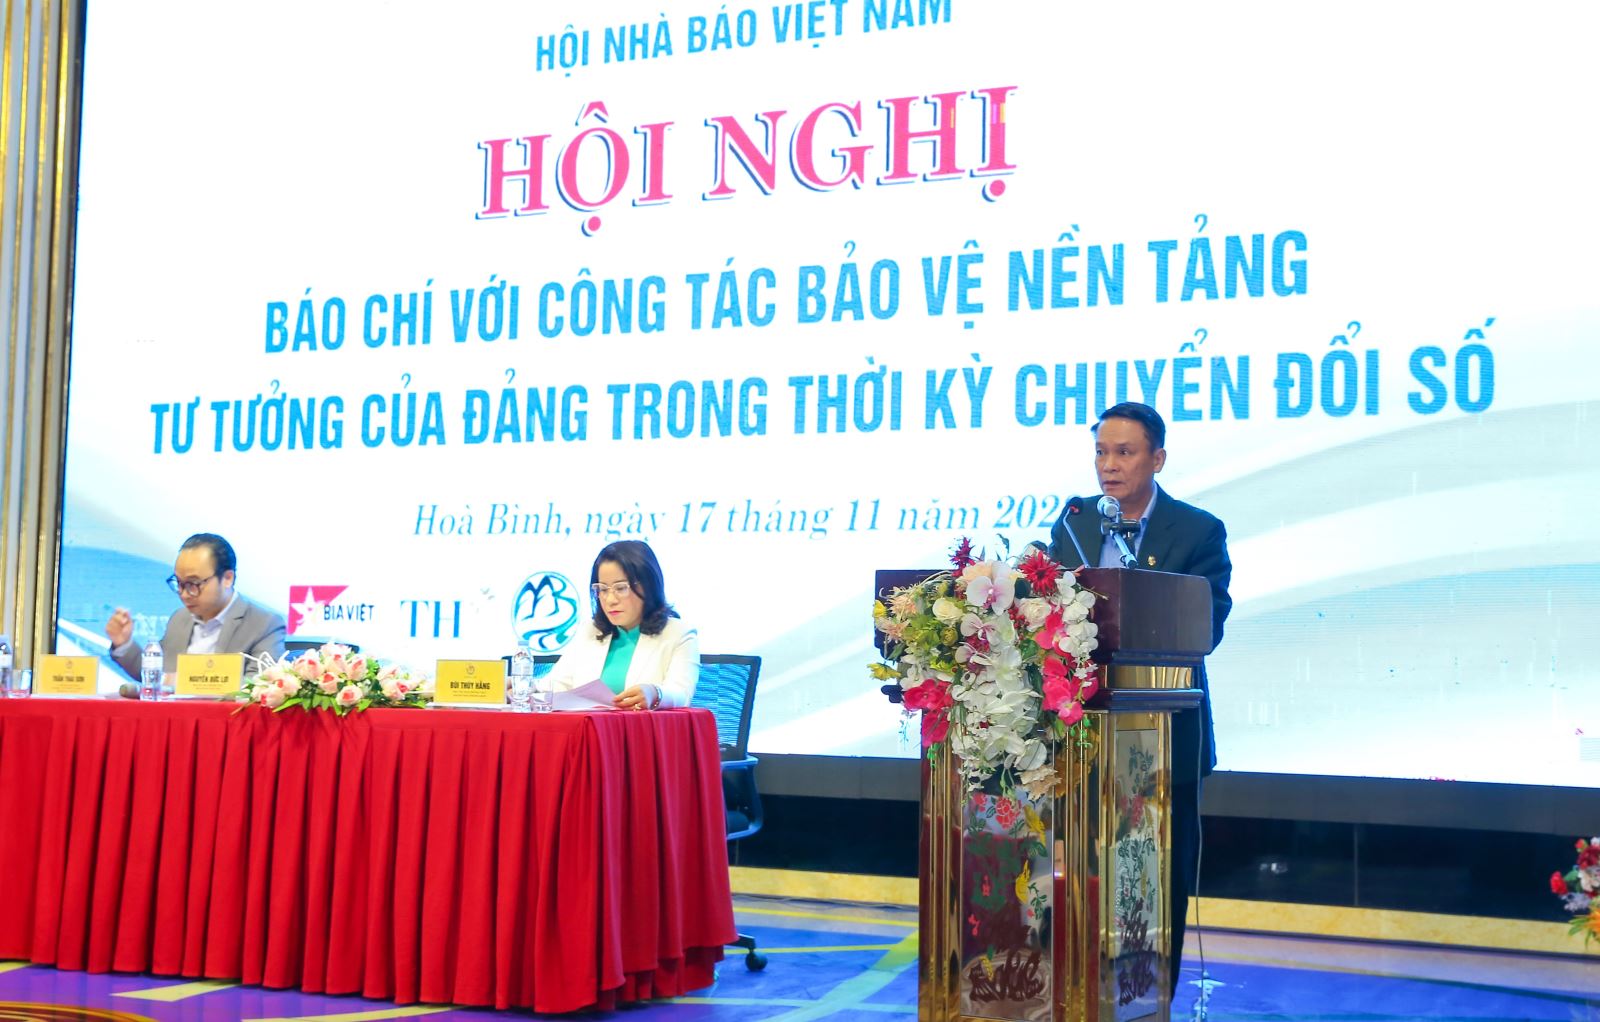 Đồng chí Nguyễn Đức Lợi, Phó Chủ tịch Thường trực Hội Nhà báo Việt Nam phát biểu khai mạc Hội nghị